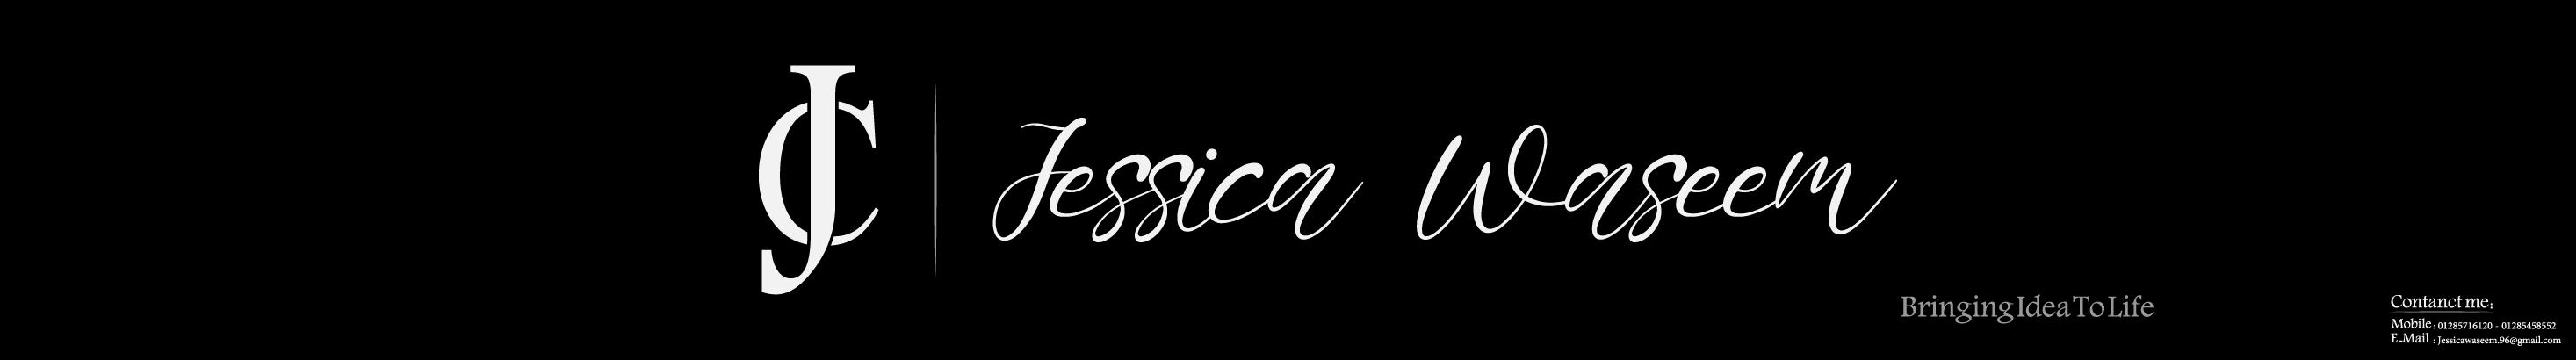 Profil-Banner von Jessica Waseem